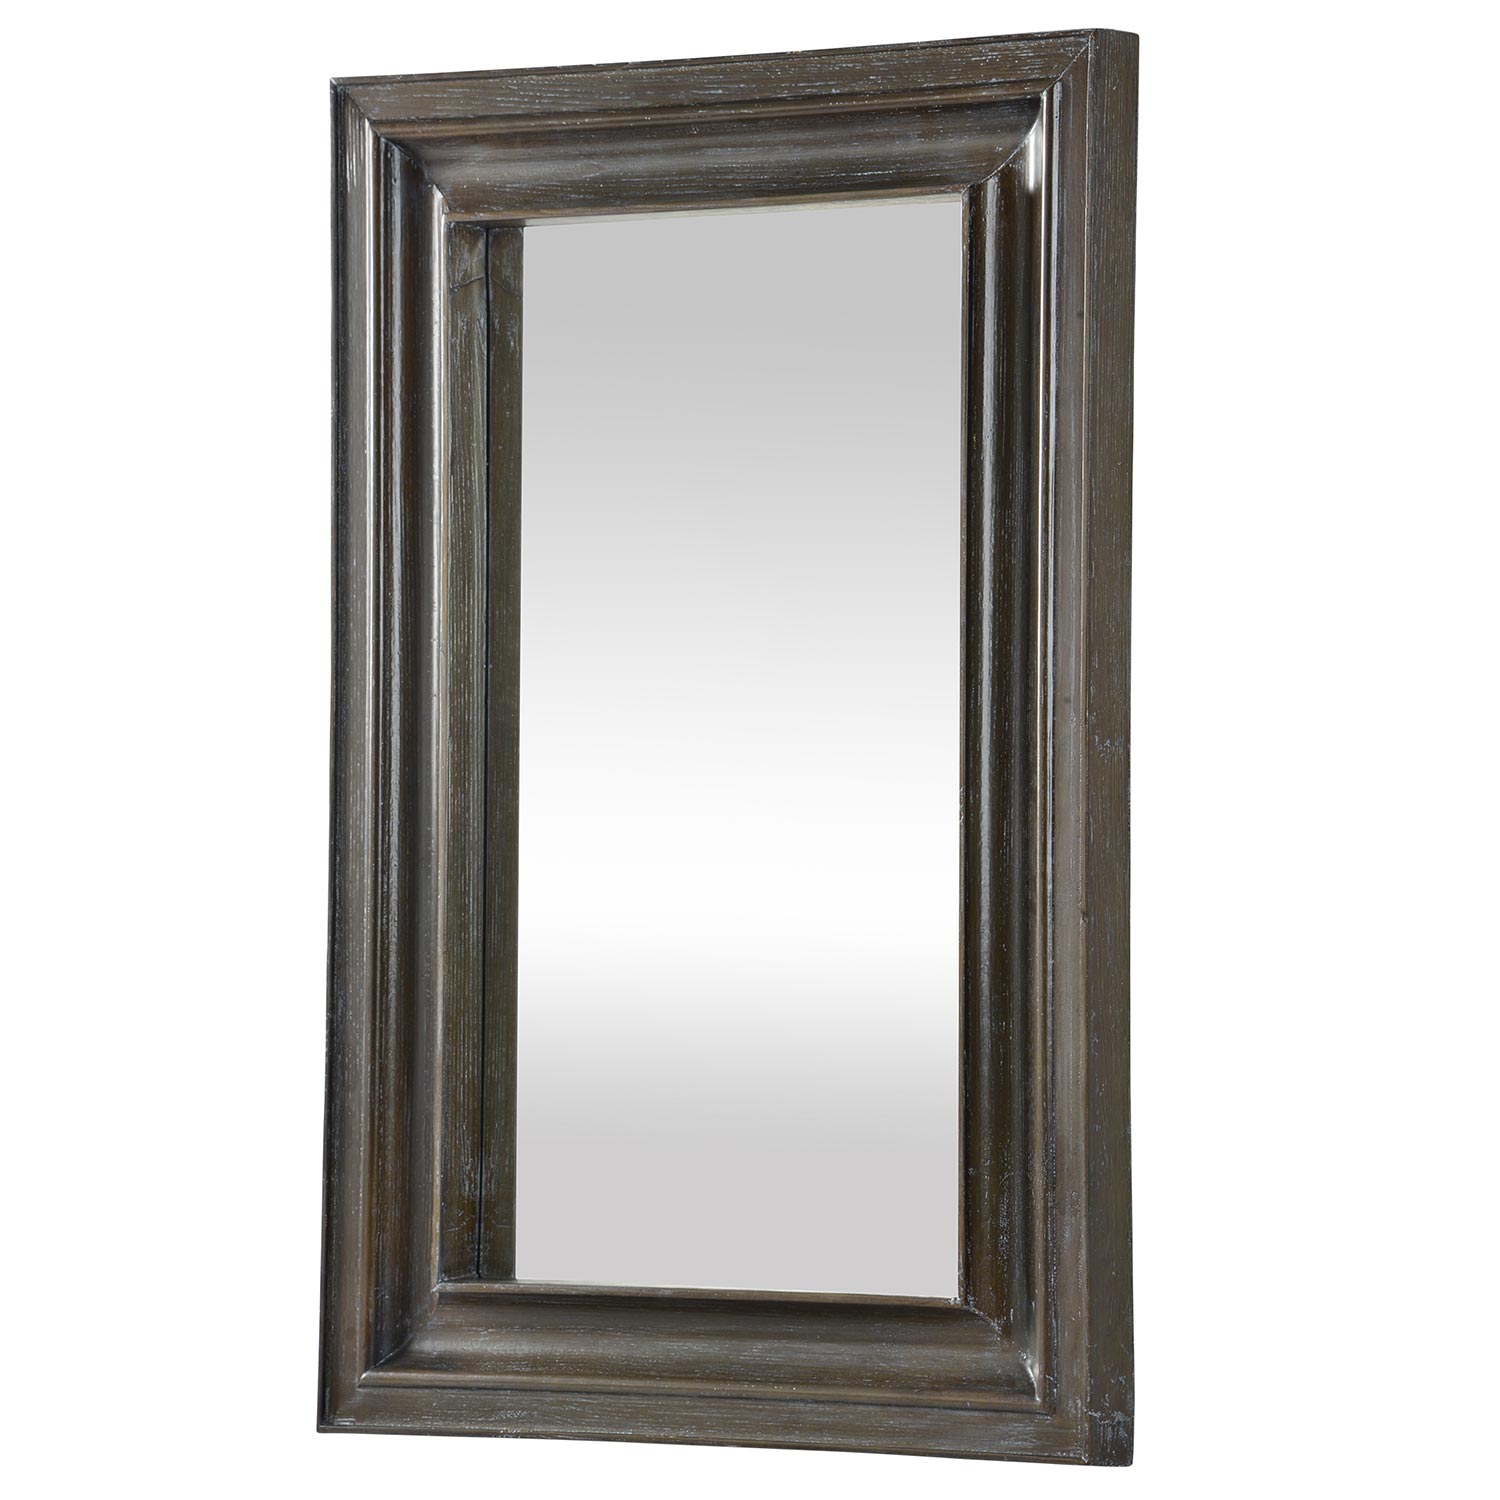 Ren-Wil Vast Mirror - Dark wood stained